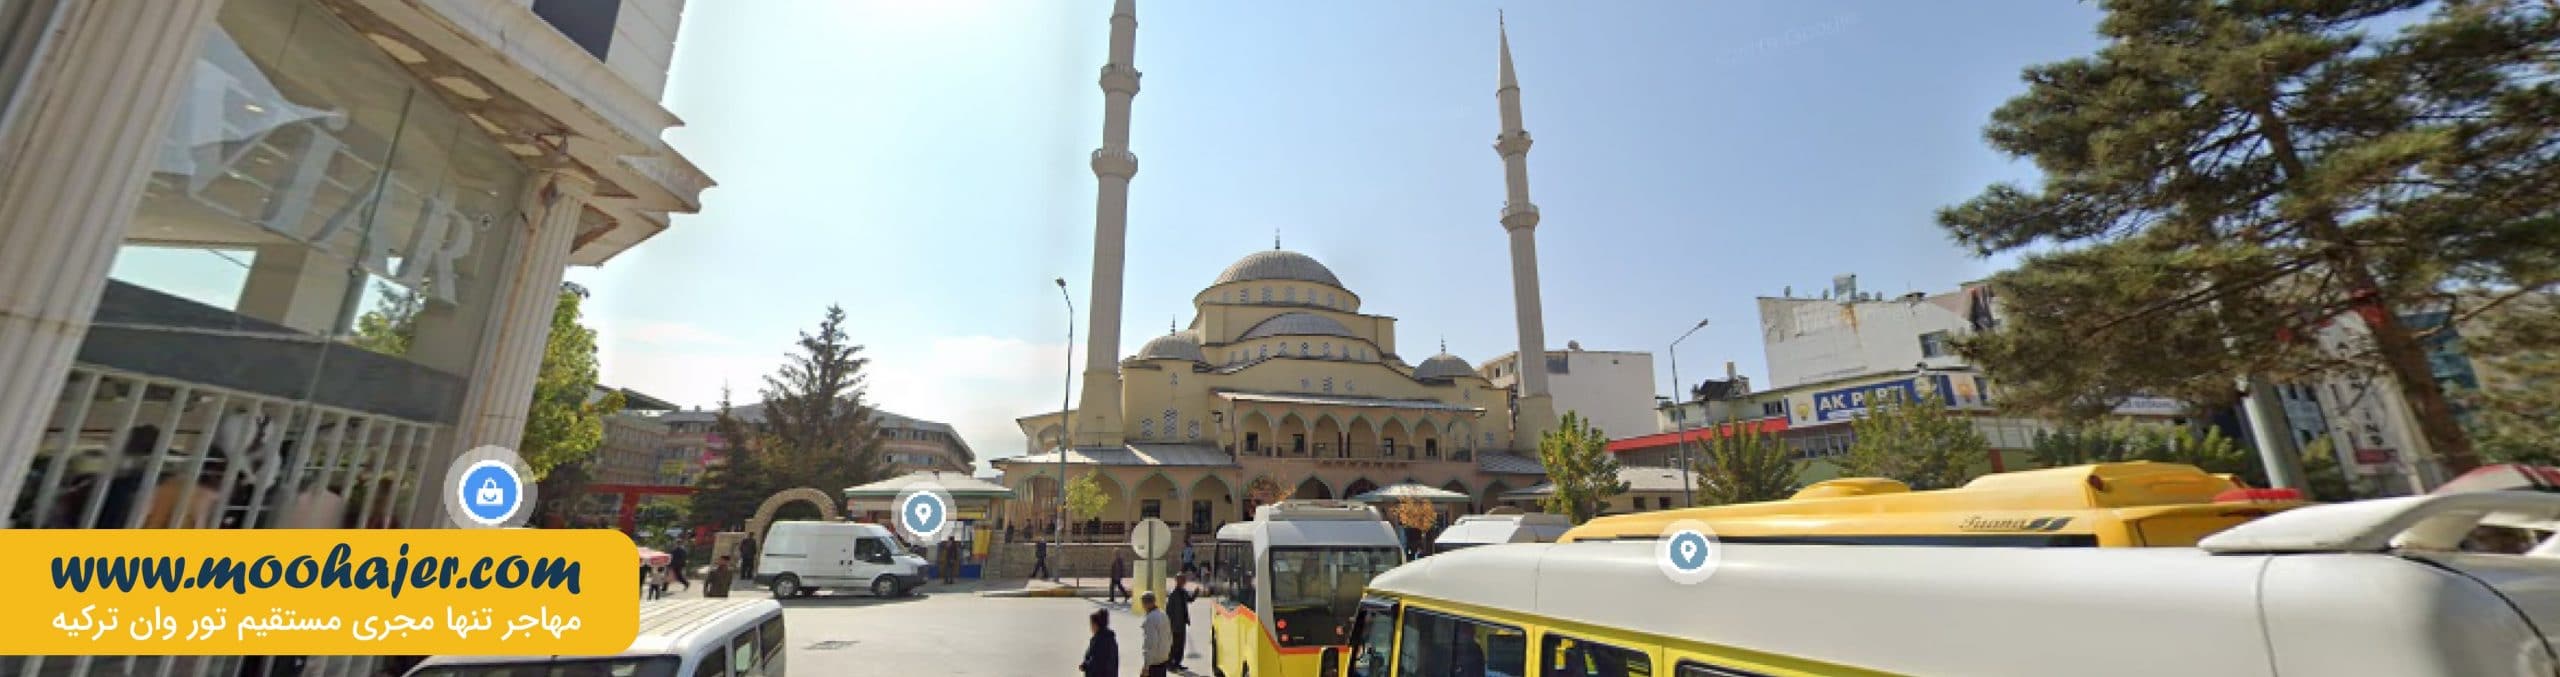 مسجد حضرت عمر وان | جاذبه های گردشگری وان